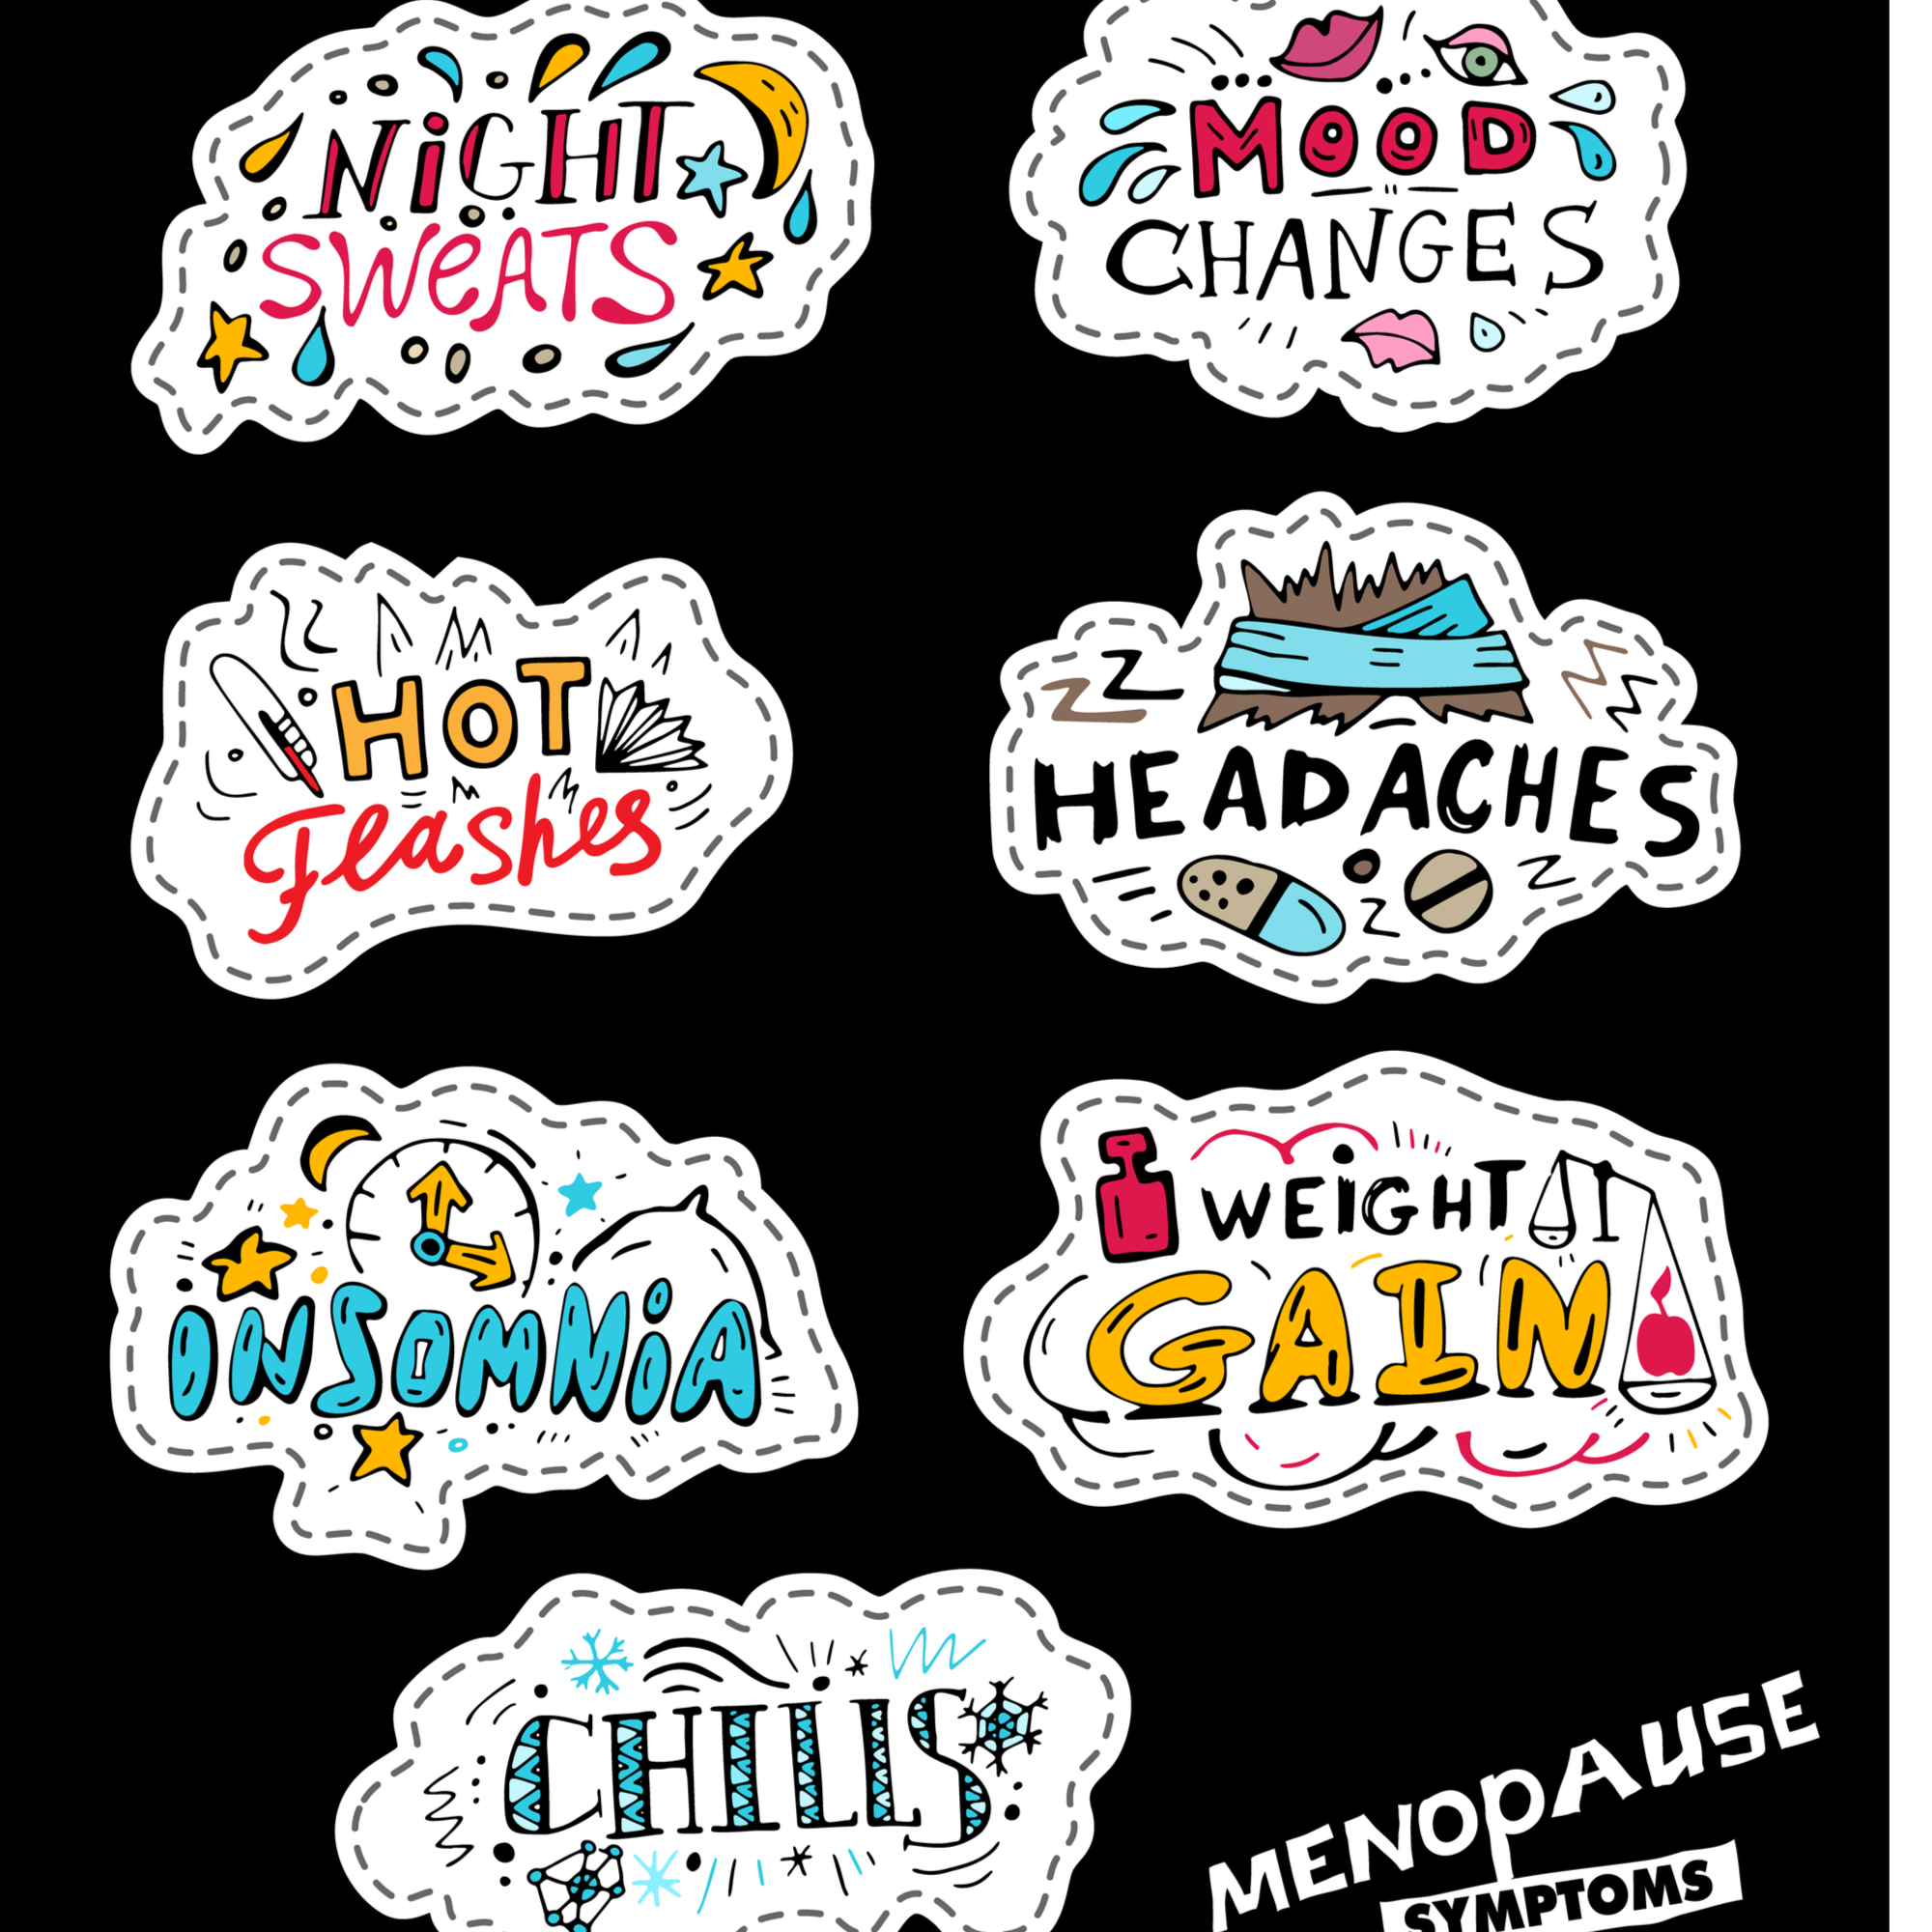 Menopause 1